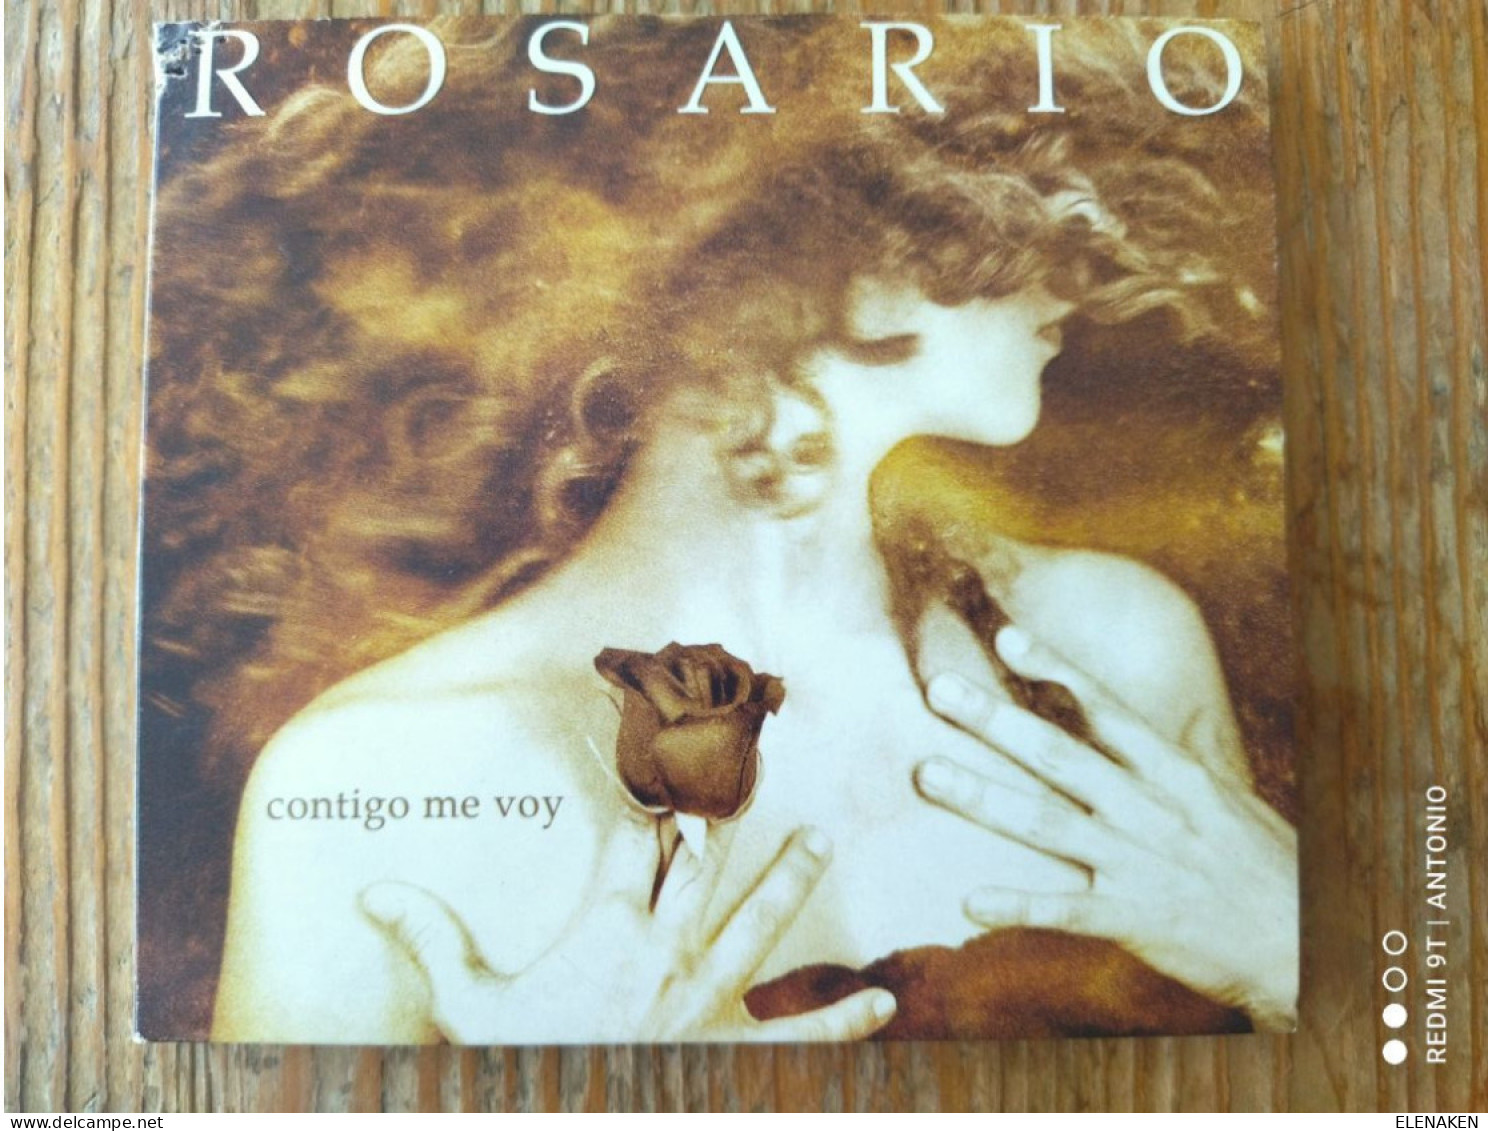 CDs De Música: ROSARIO FLORES .CONTIGO ME VOY .CD SONY 2006 NUEVO FLAMENCO POP RUMBAS - SIN APENAS USO, FOTO REAL - Altri - Musica Spagnola